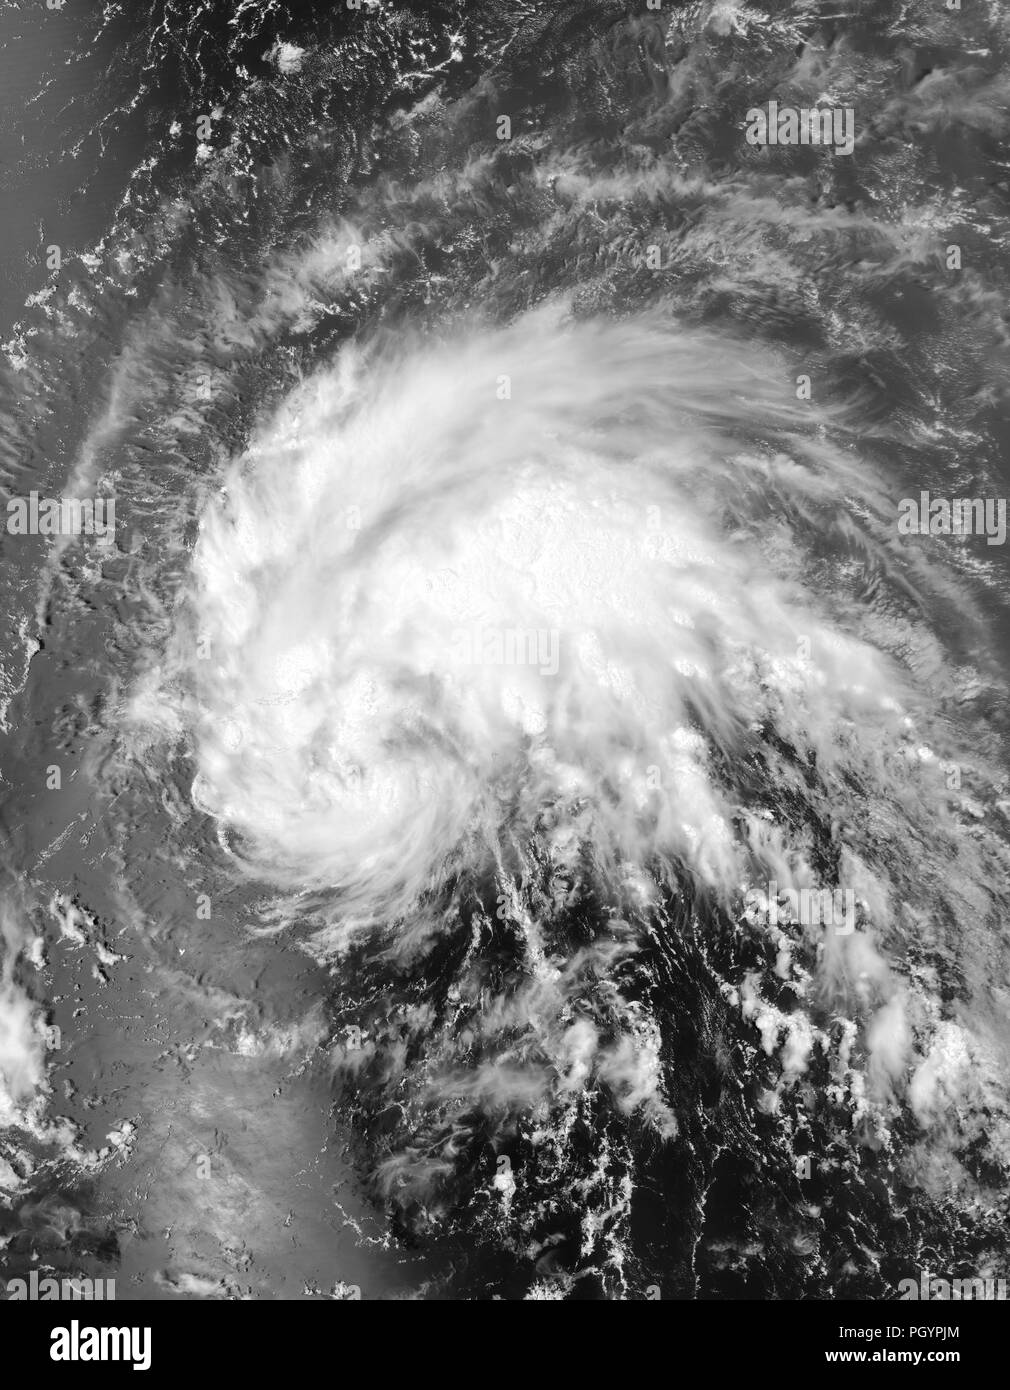 Tropischer Sturm Irene nähert sich Puerto Rico, vom Aqua Satelliten der NASA, 2011 übernommen. Mit freundlicher Genehmigung der NASA Goddard MODIS Rapid Response Team. () Stockfoto